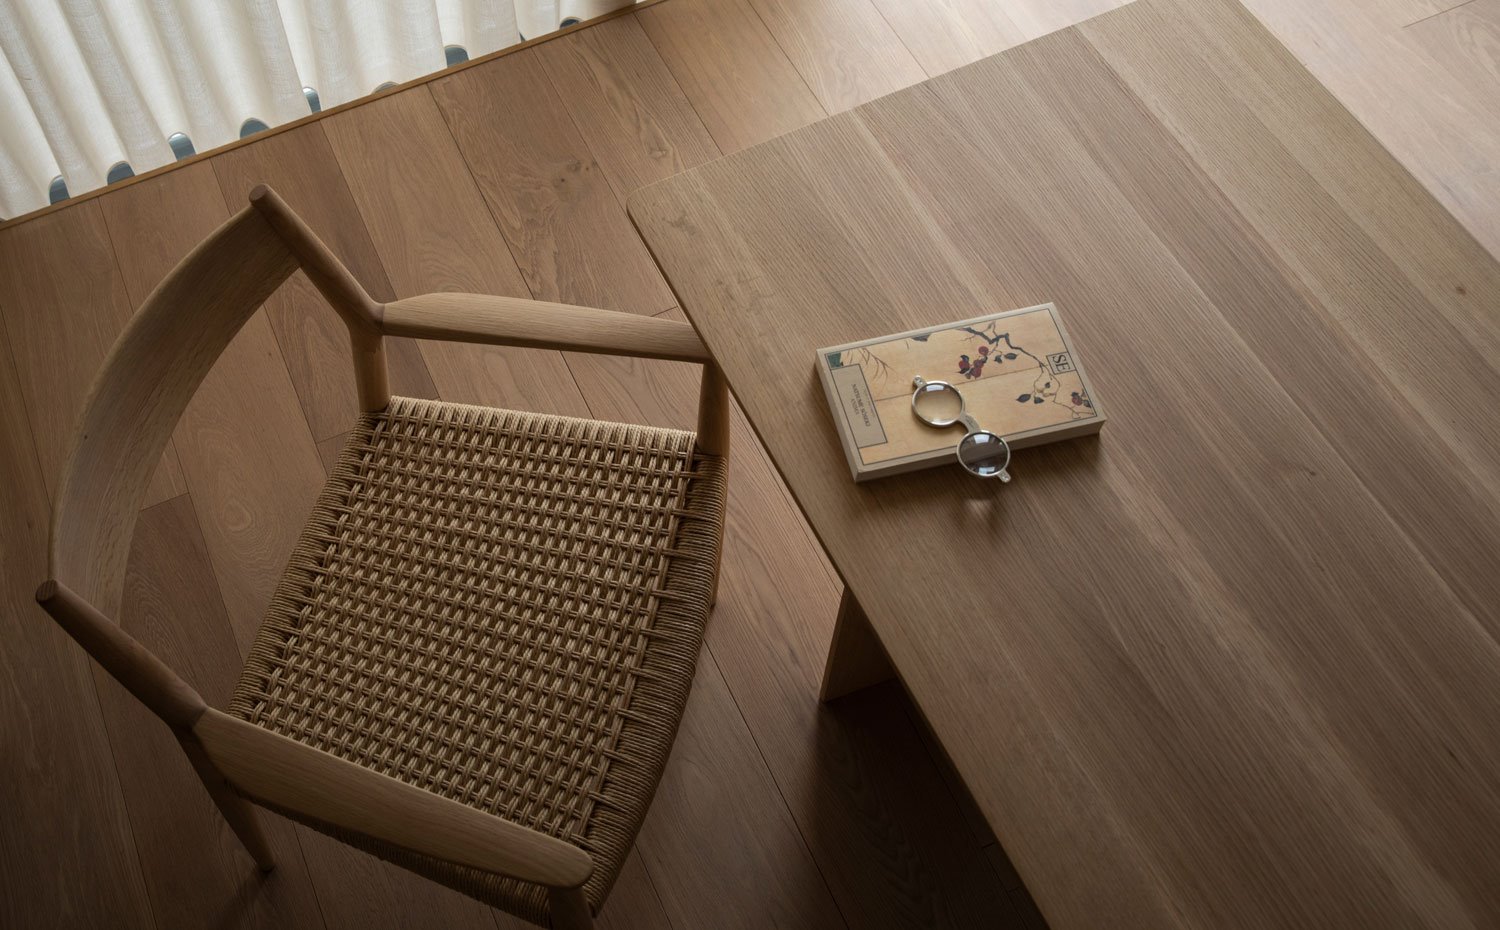 Silla, mesa y pavimento de madera, libro y anteojos sobre mesa